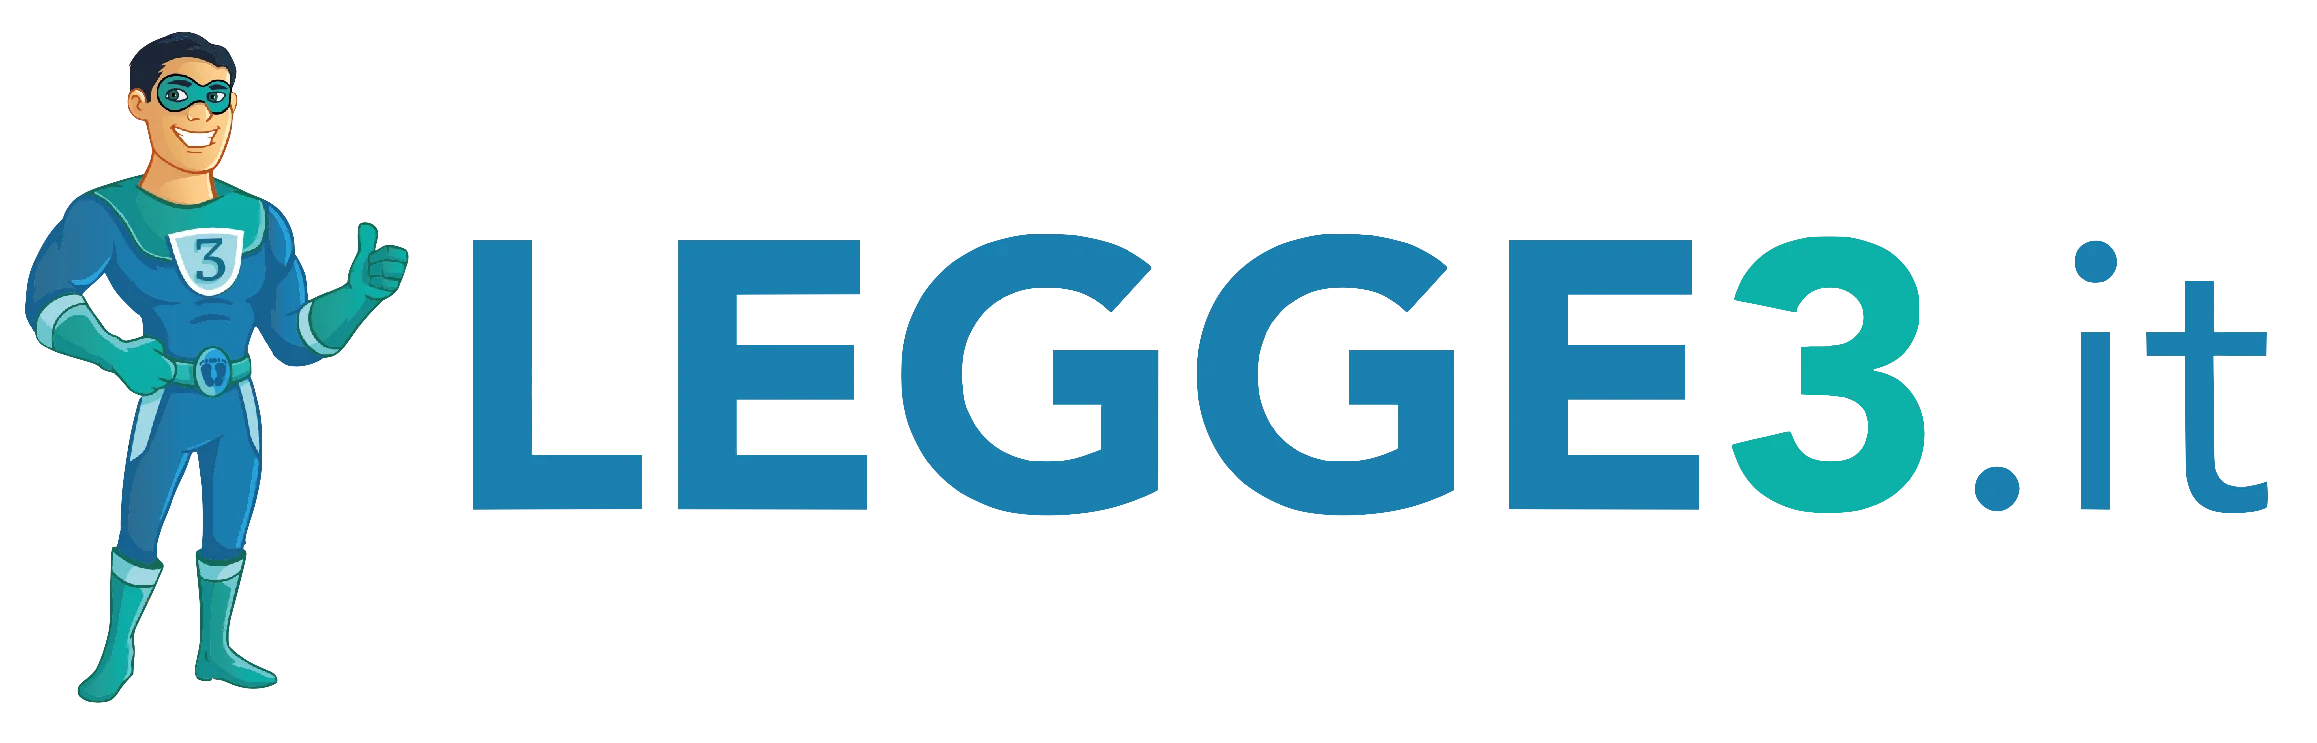 legge3-logo.png